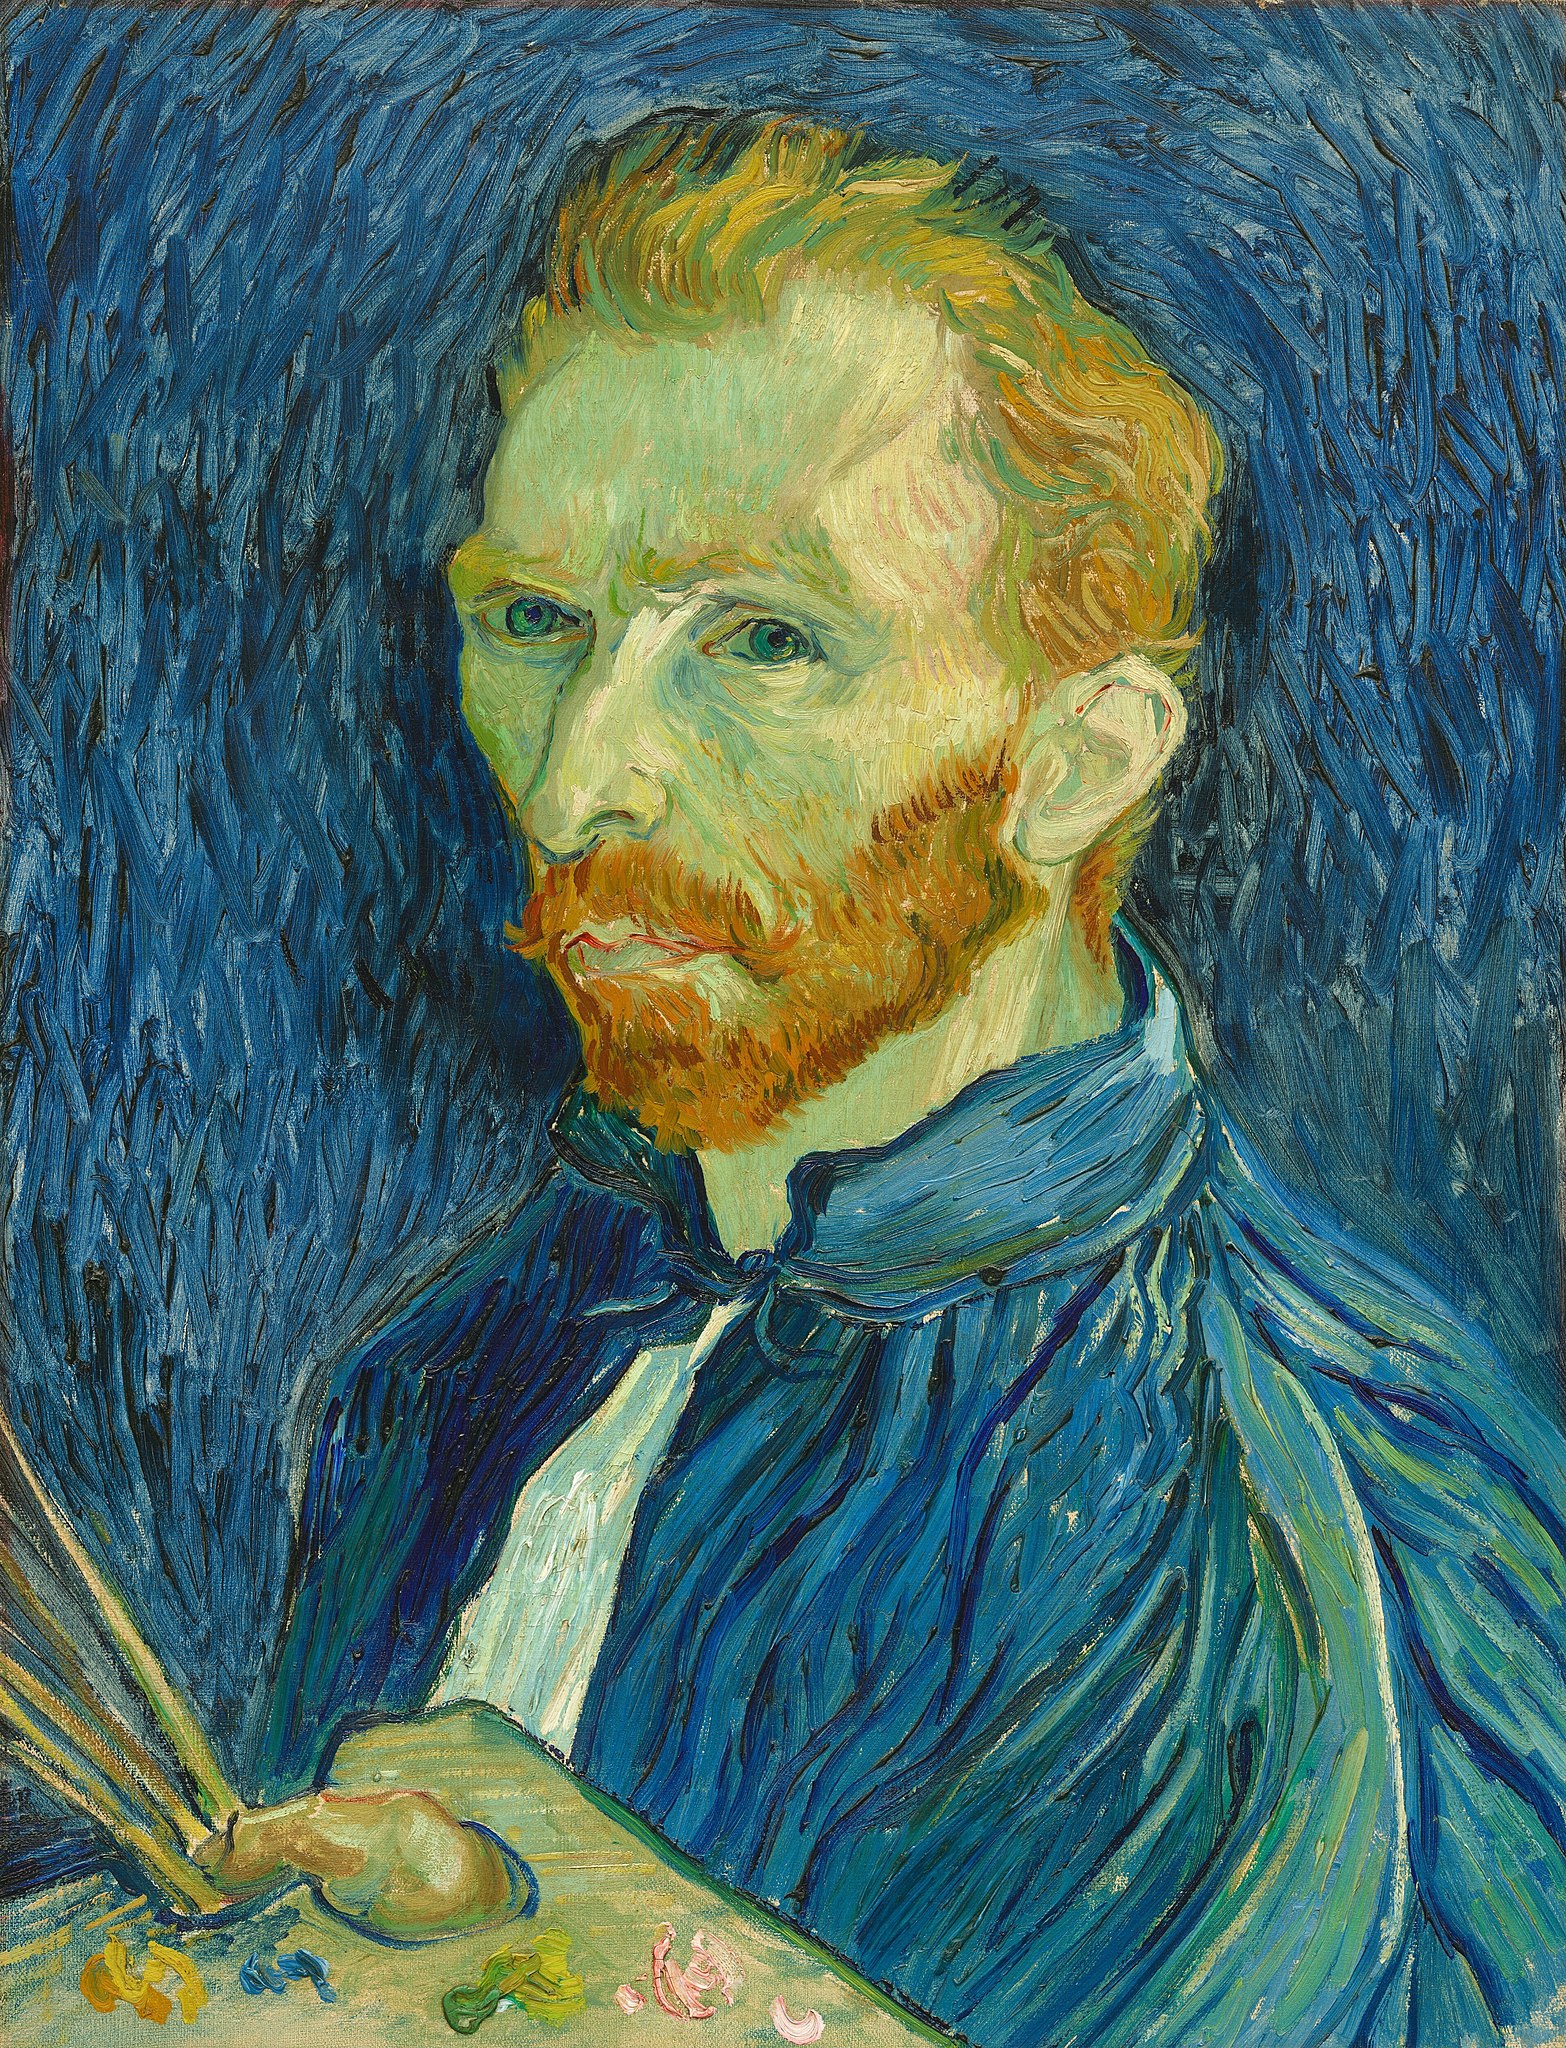 Önarckép by Vincent van Gogh - 1889 - 43,8 x 57,1 cm 